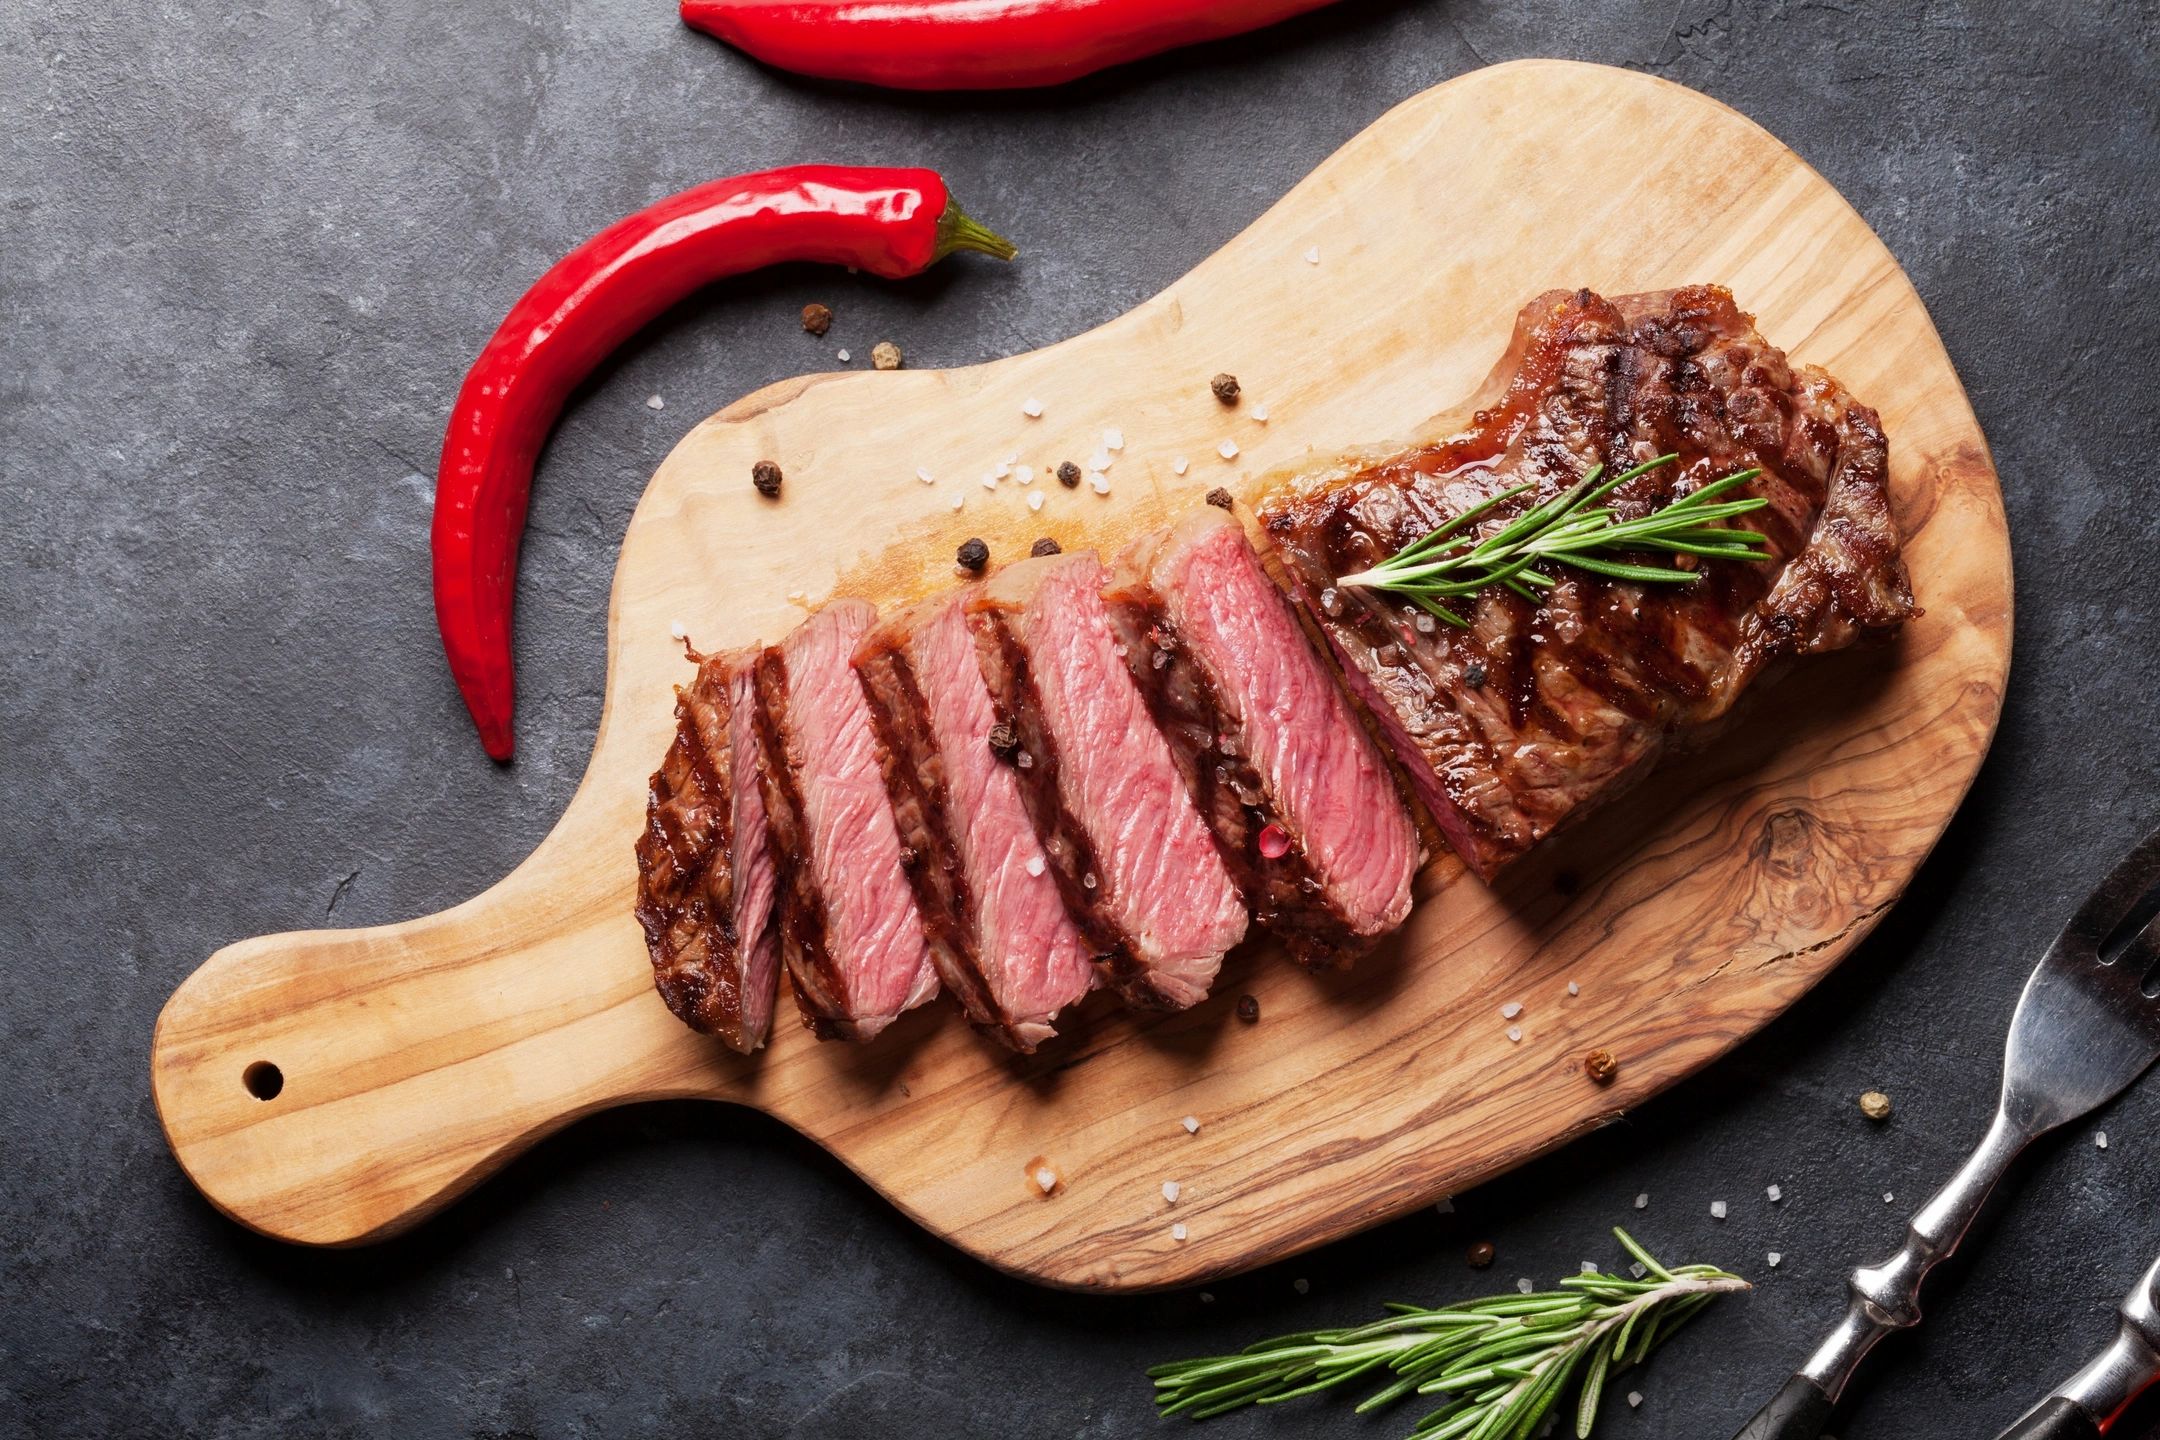 Steak on a wooden board